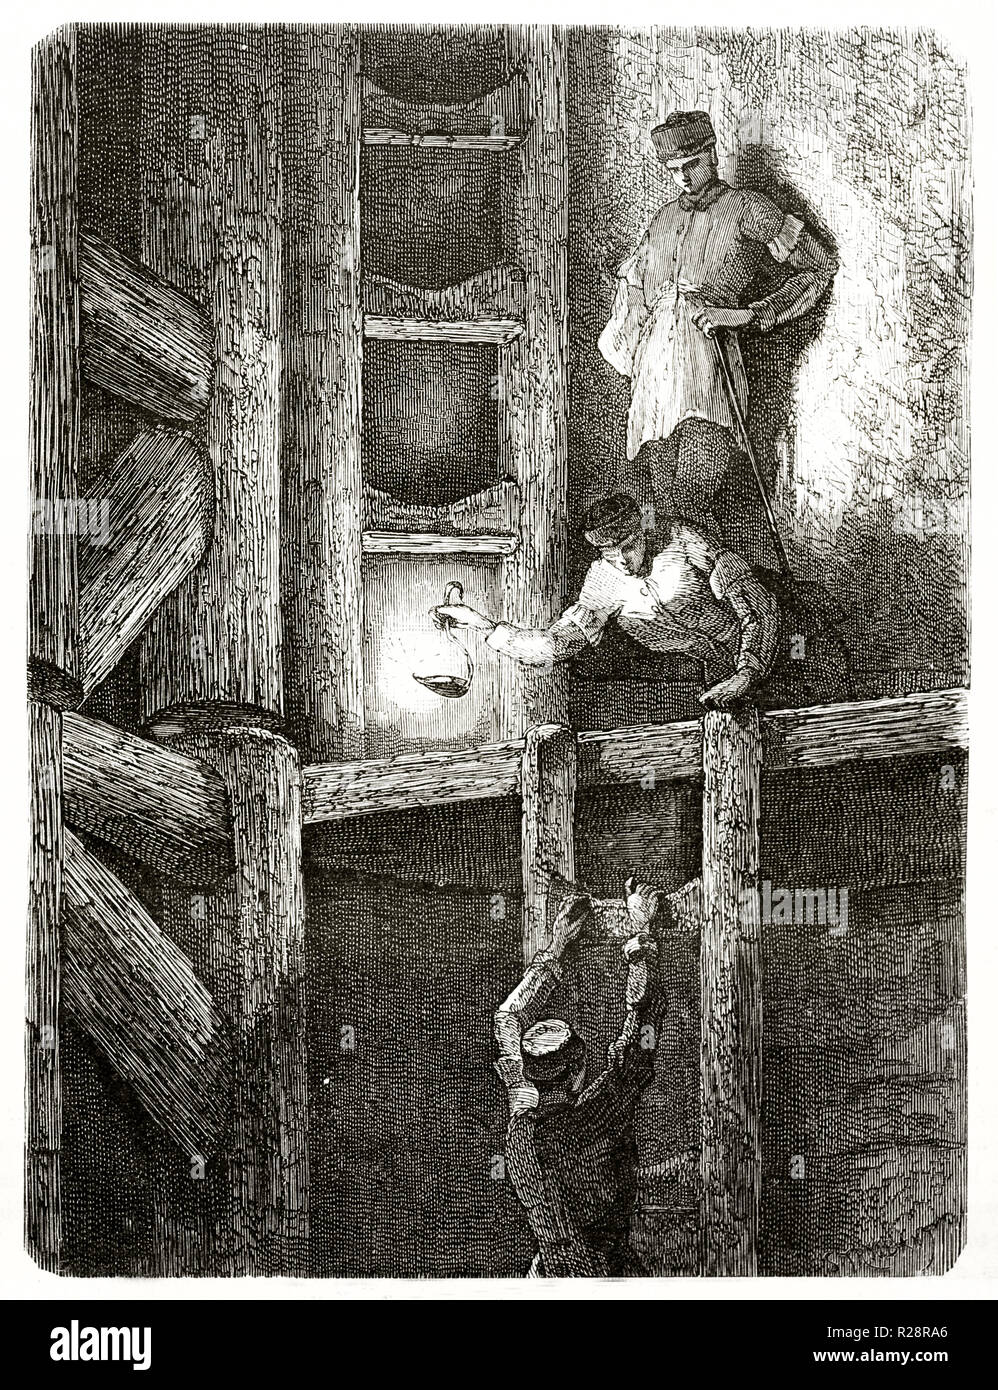 Vieille illustration dépeignant les hommes en ordre décroissant par les escaliers dans une mine d'Harz, Allemagne. Par Stroobant, publ. sur le Tour du Monde, Paris, 1863 Banque D'Images